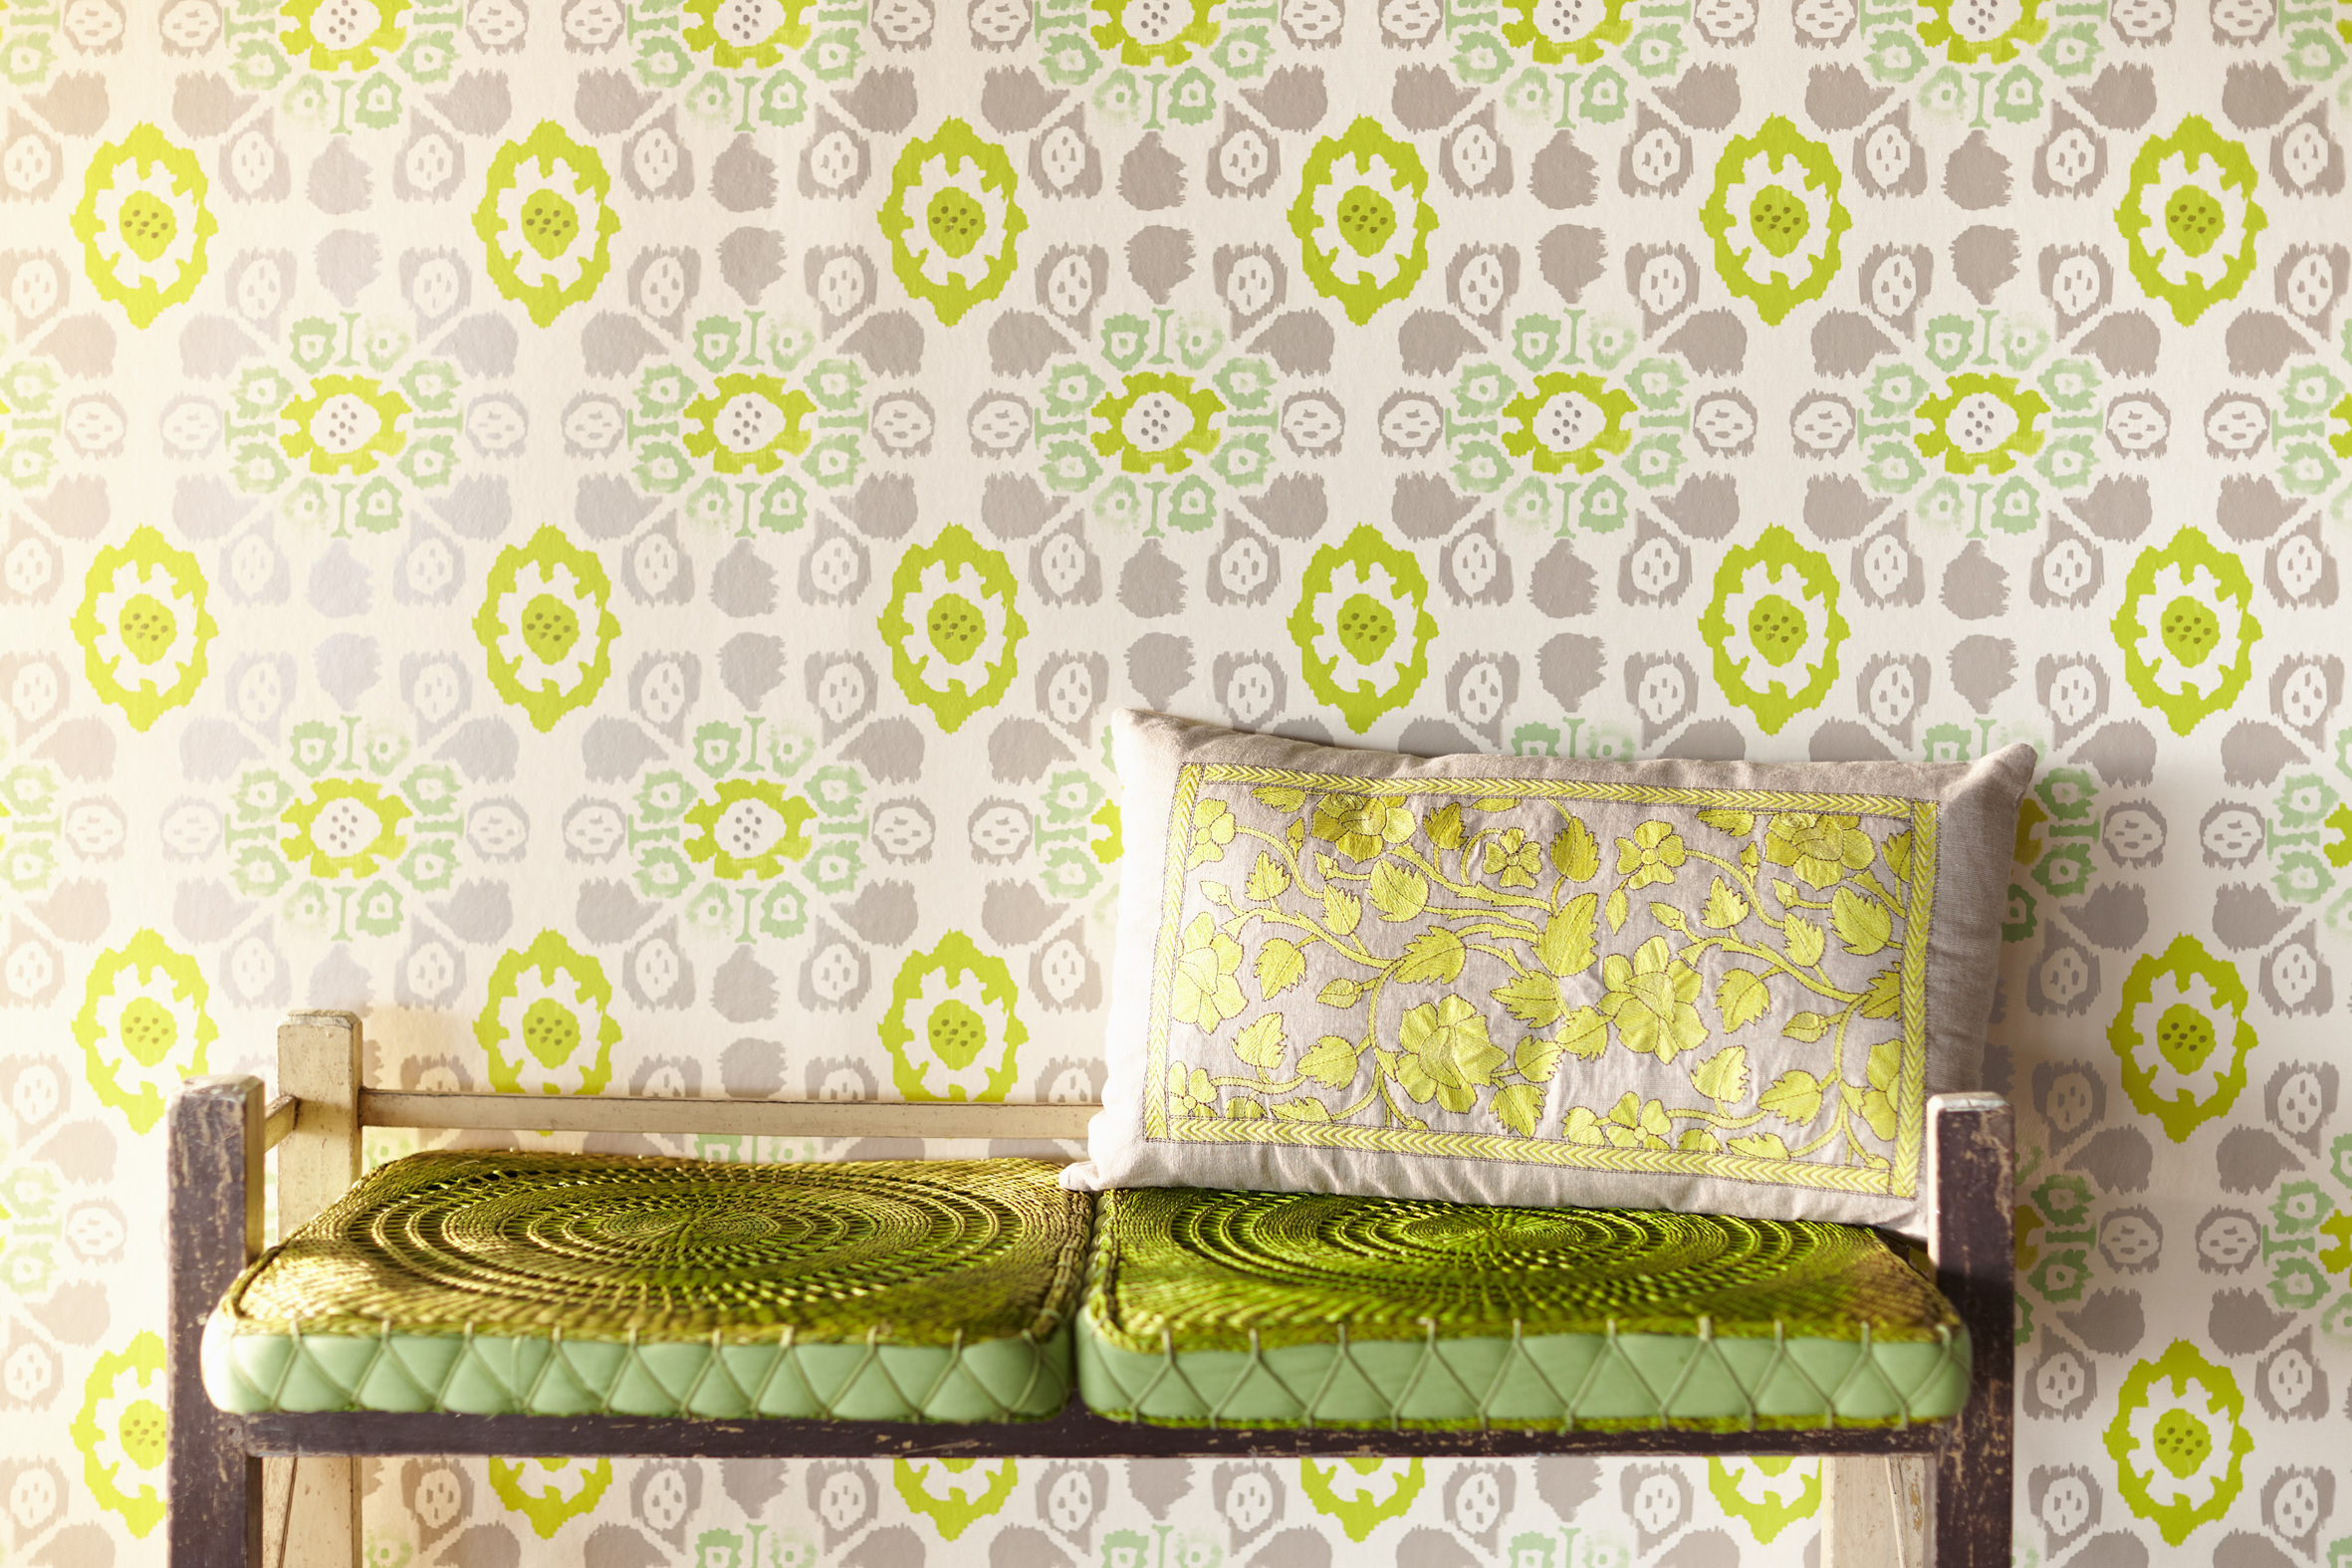 Valencia Green Tropical Ikat Floral wallpaper design